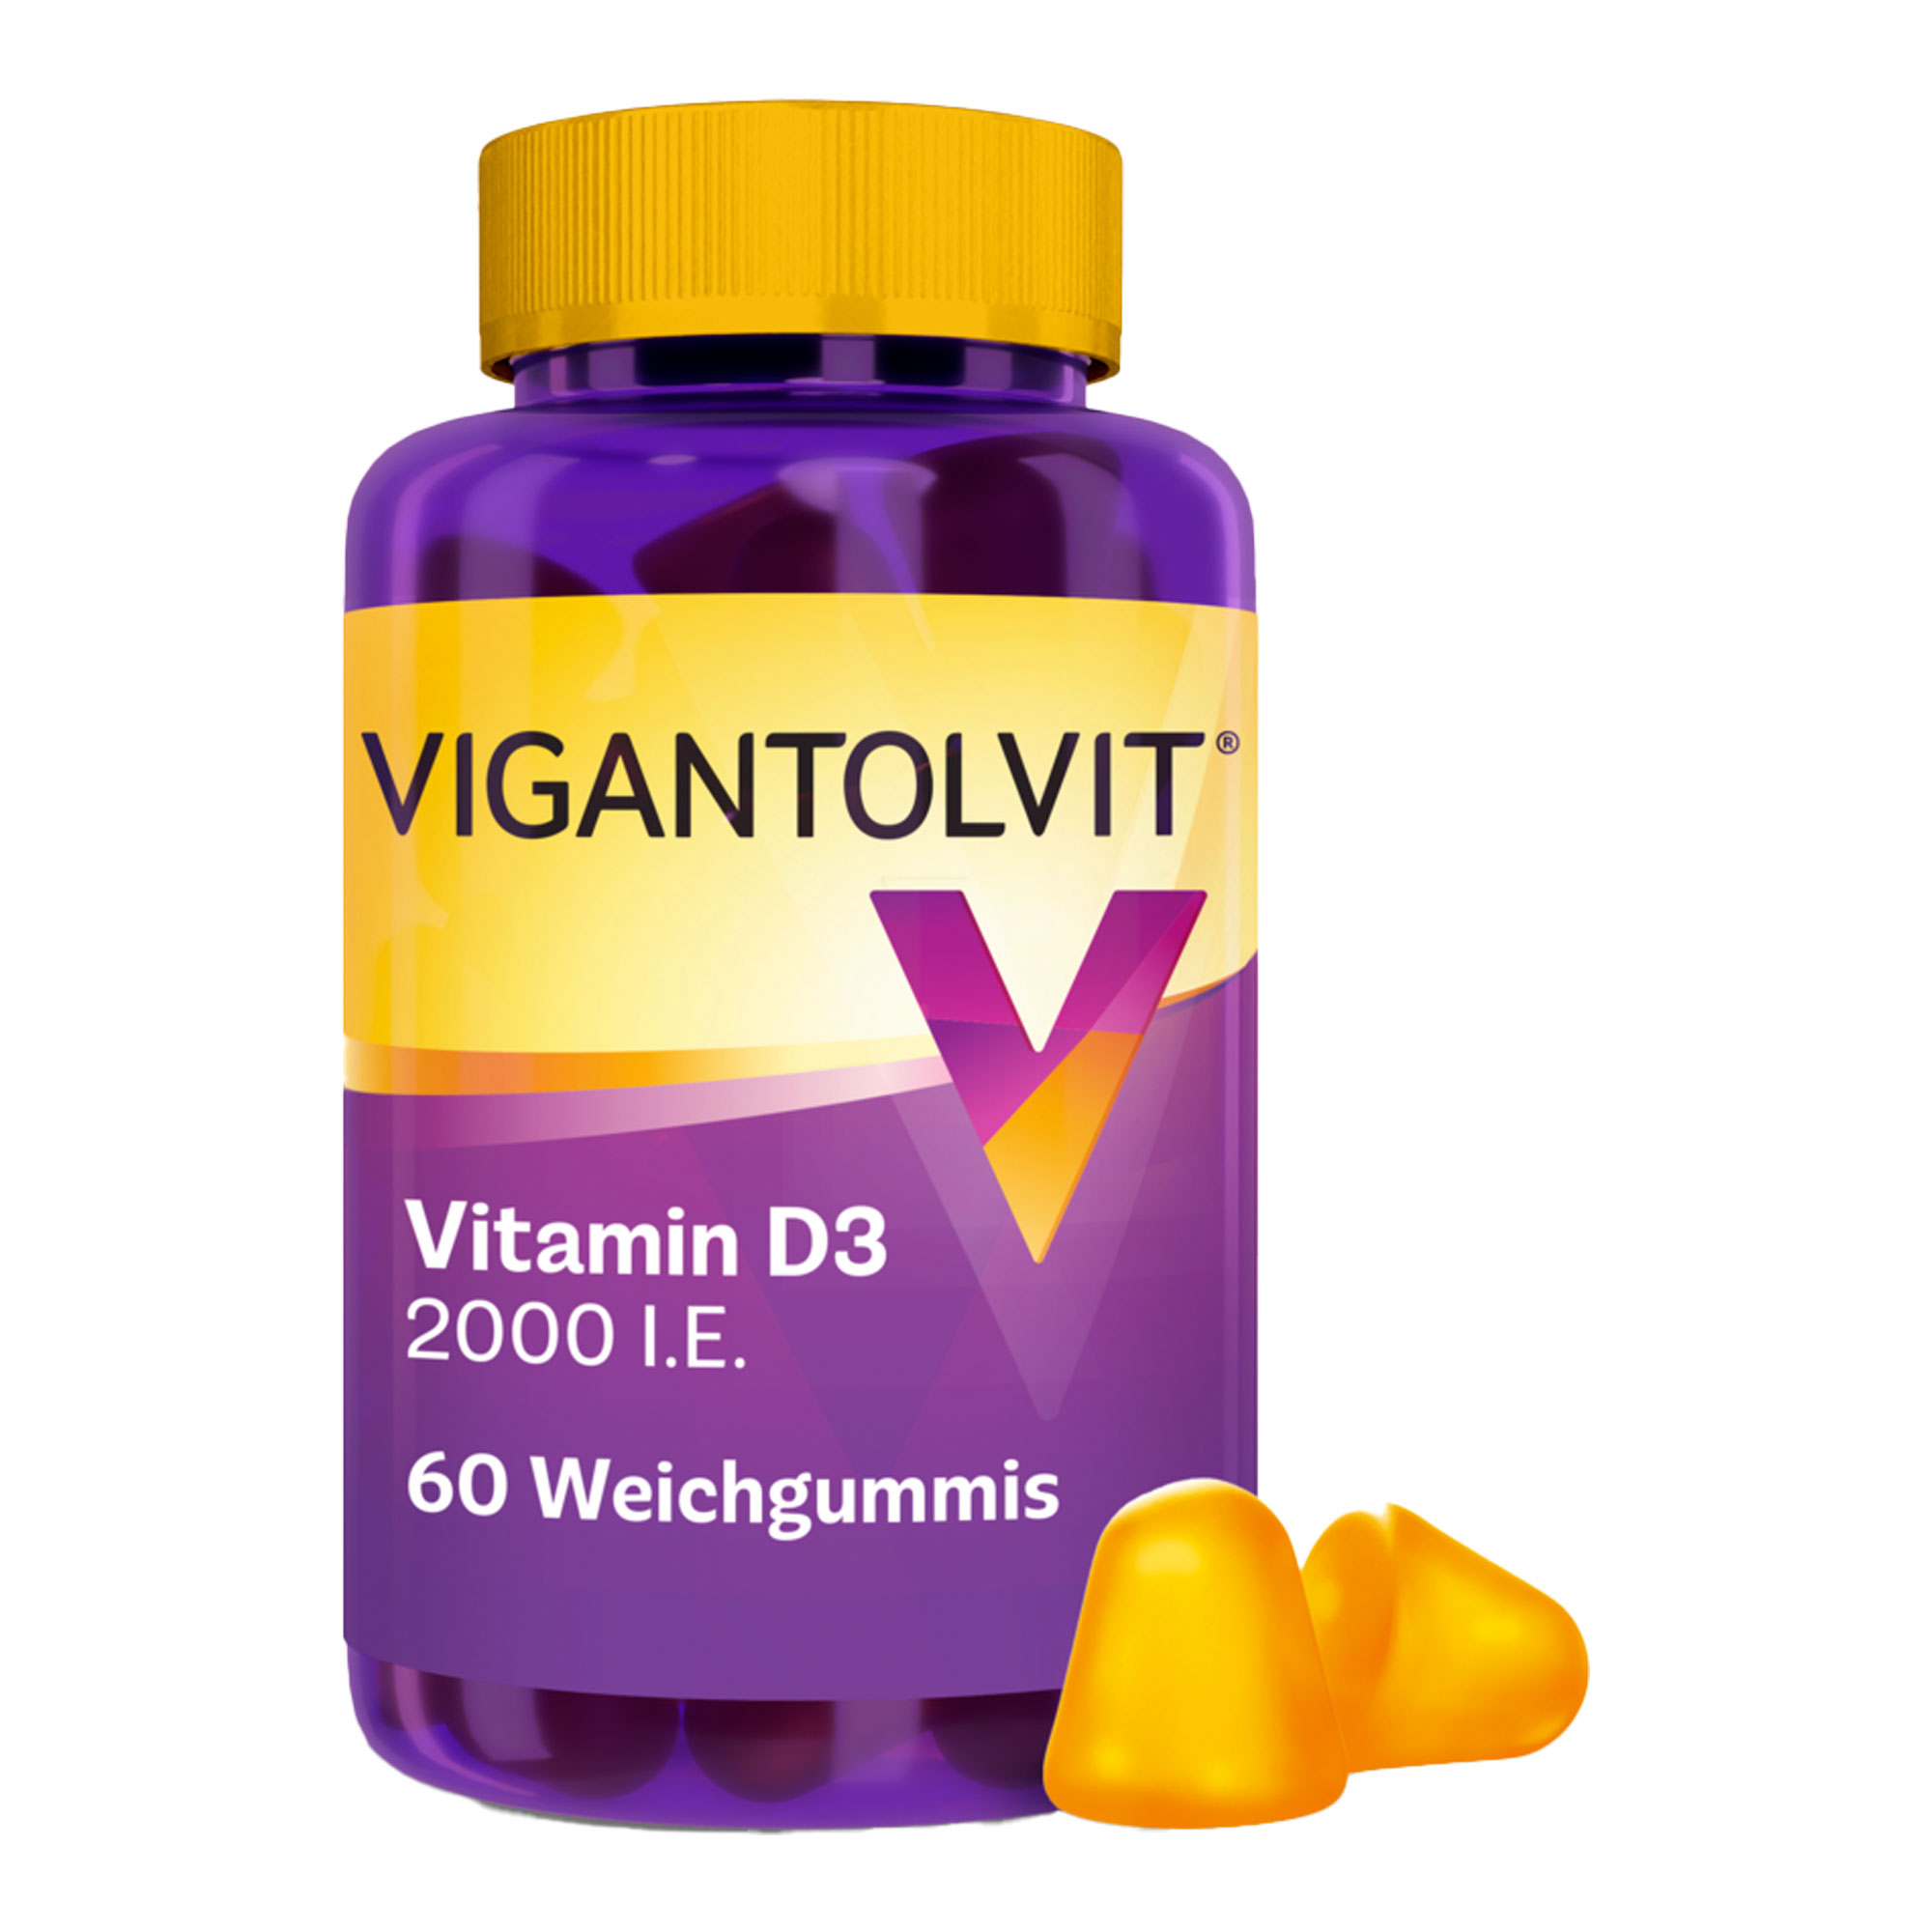 Nahrungsergänzungsmittel mit hochdosiertem Vitamin D3 (2000 I.E.). Mit Zitronengeschmack.